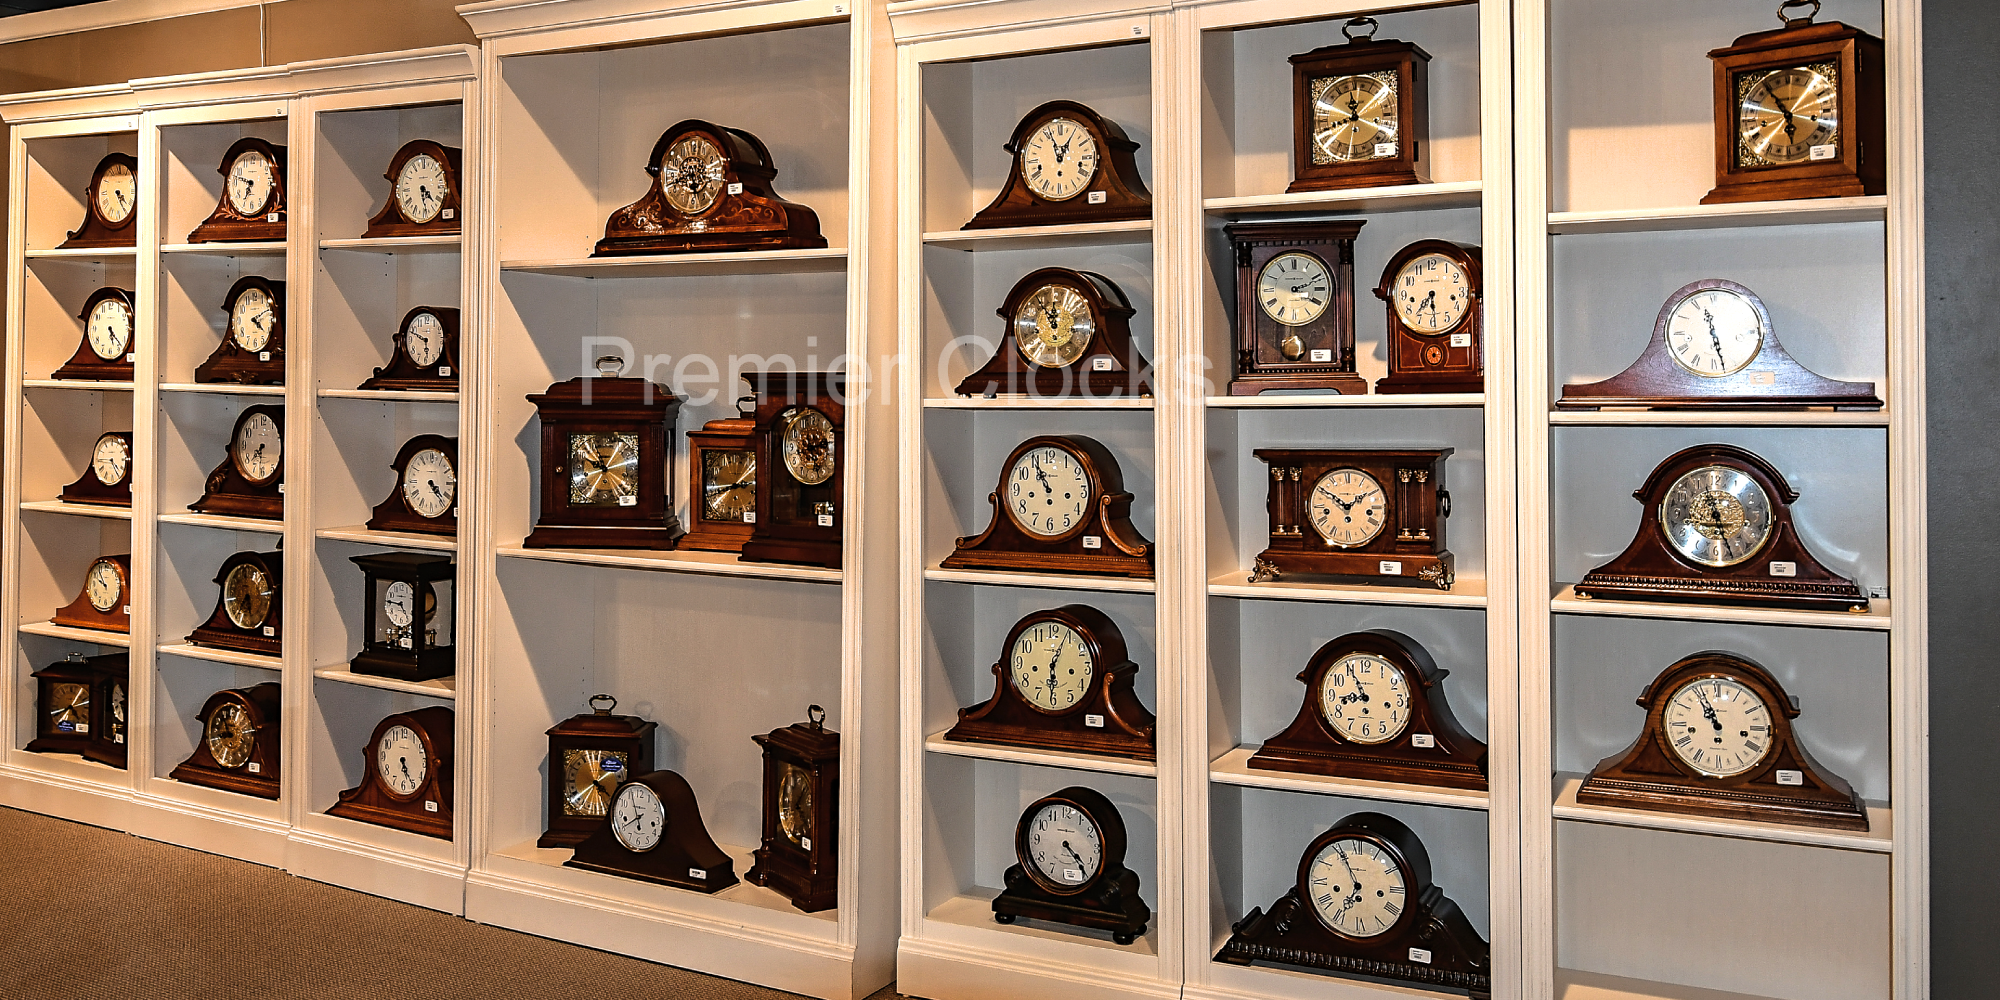 Mantel Clocks - Howard Miller Mantel Clock - Premier Clocks